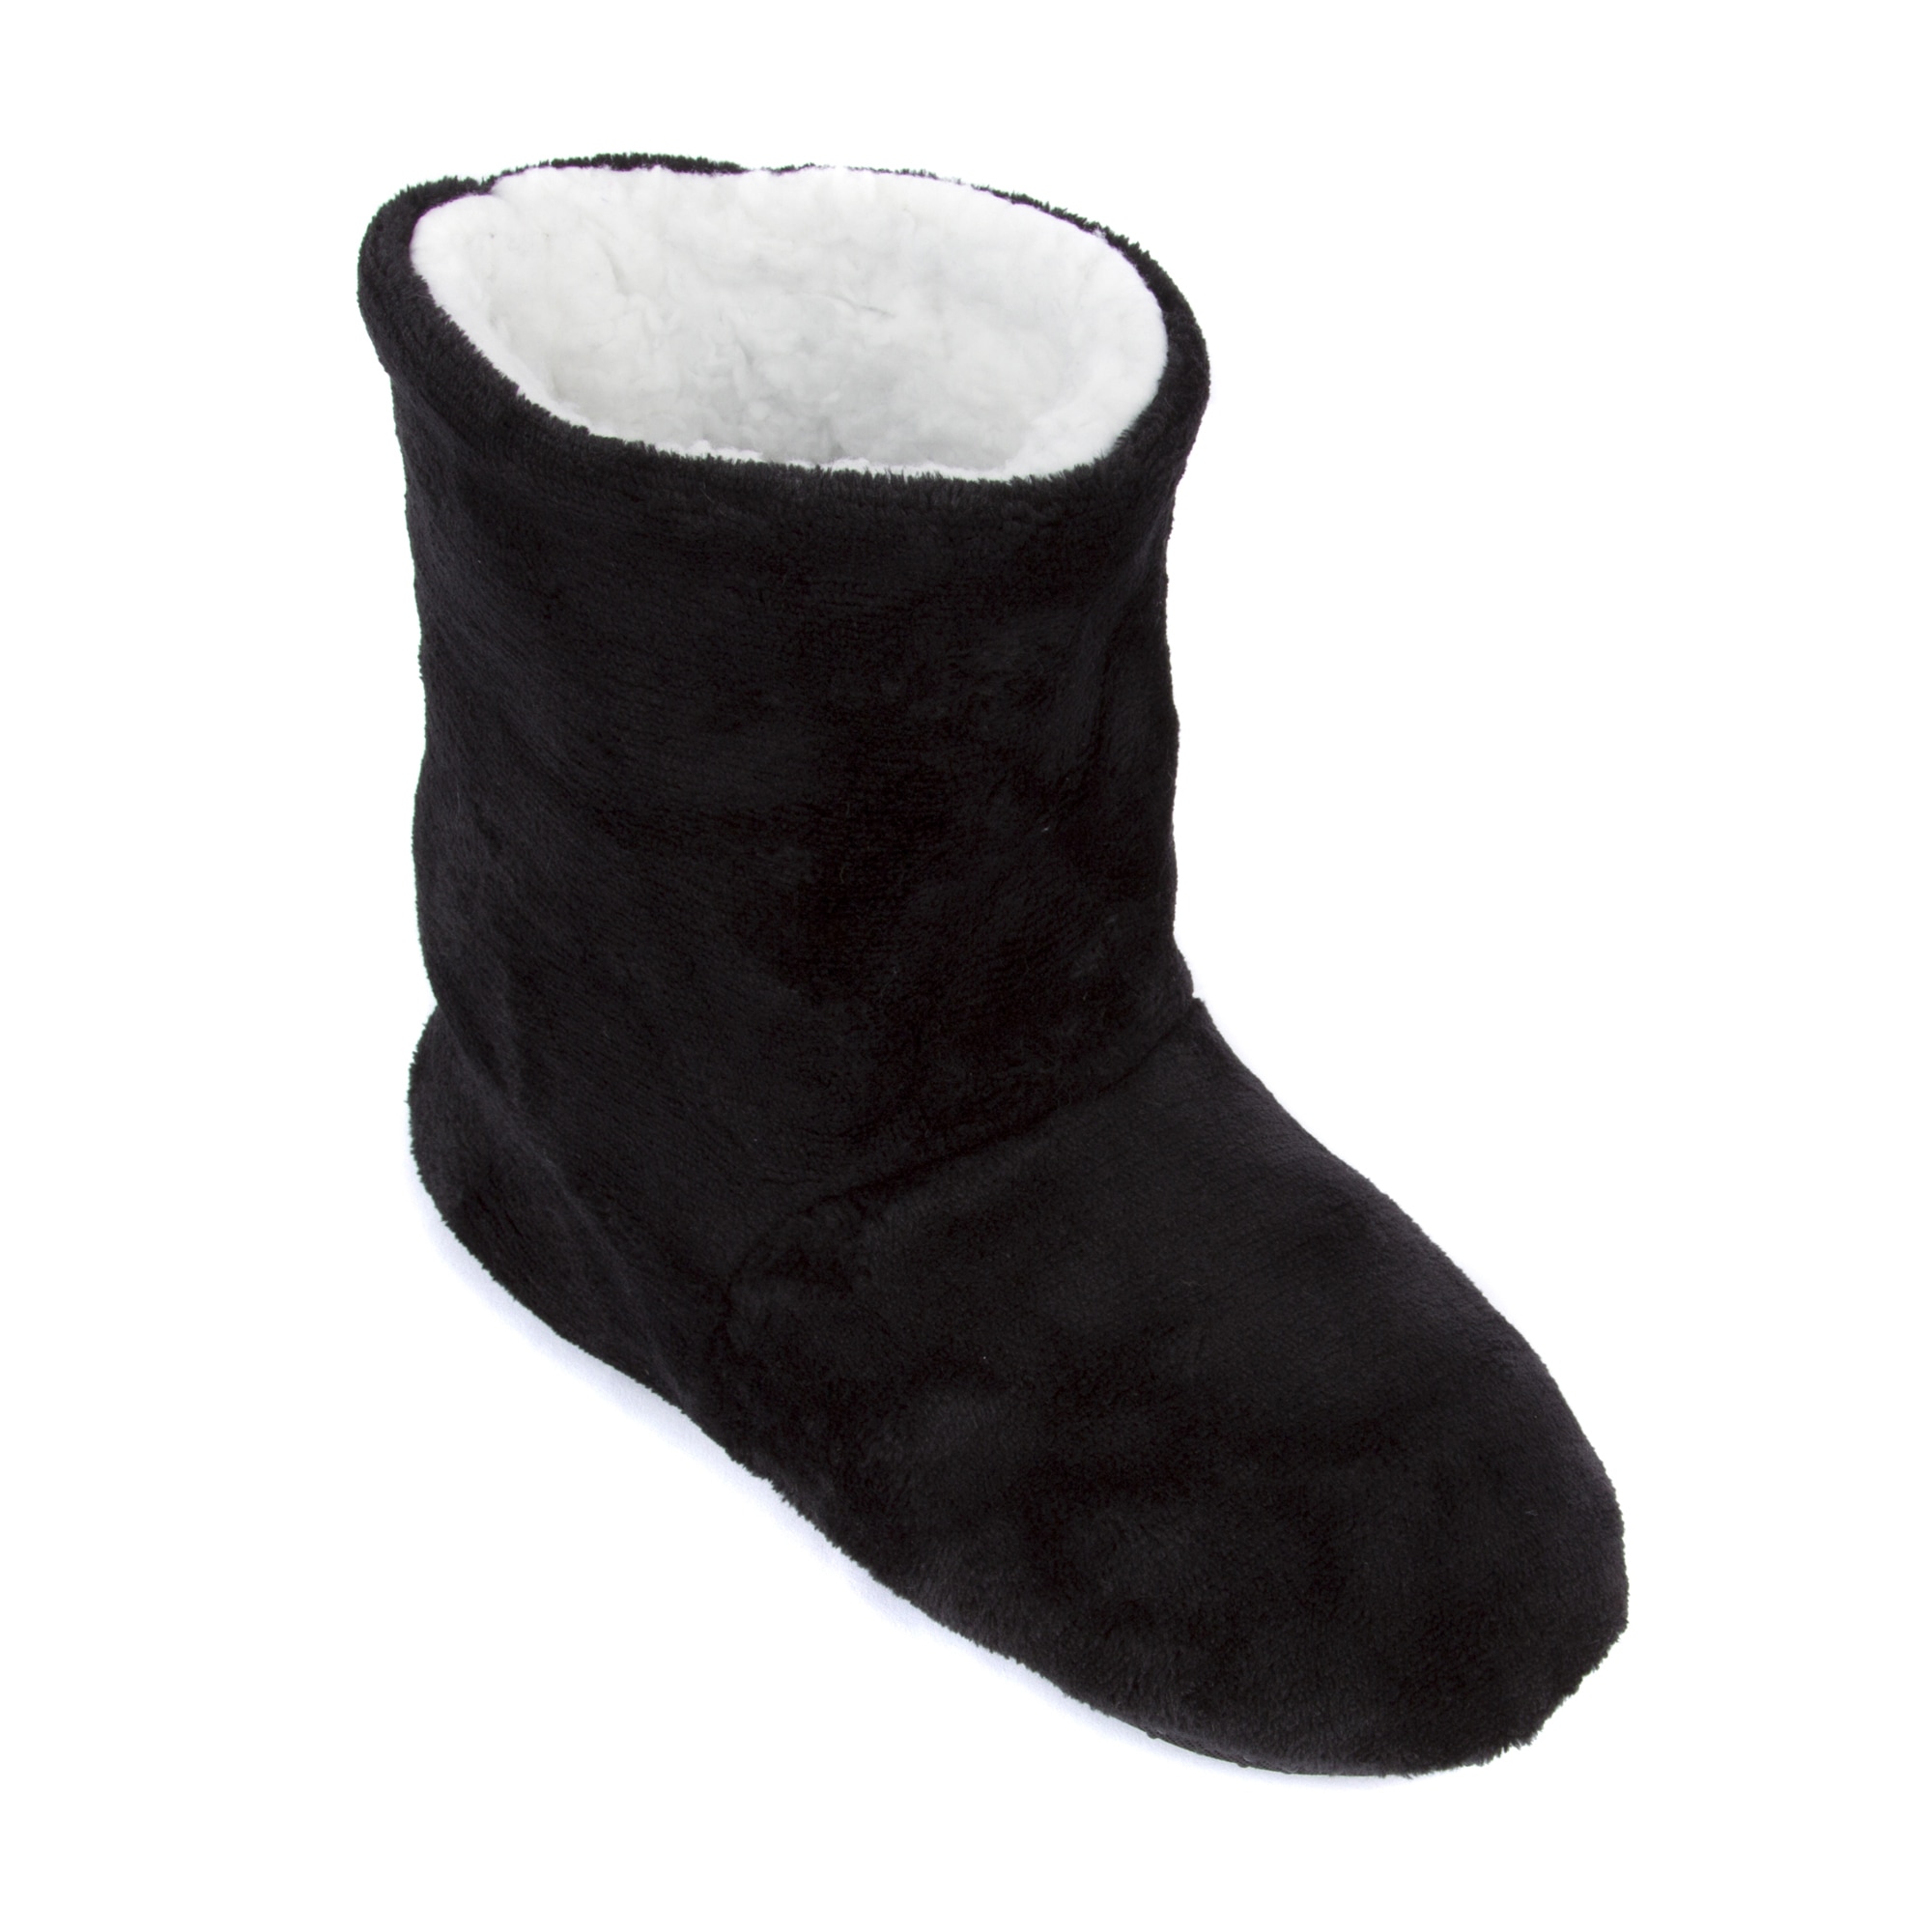 Leisureland Women's Fleece Lined Slippers | eBay